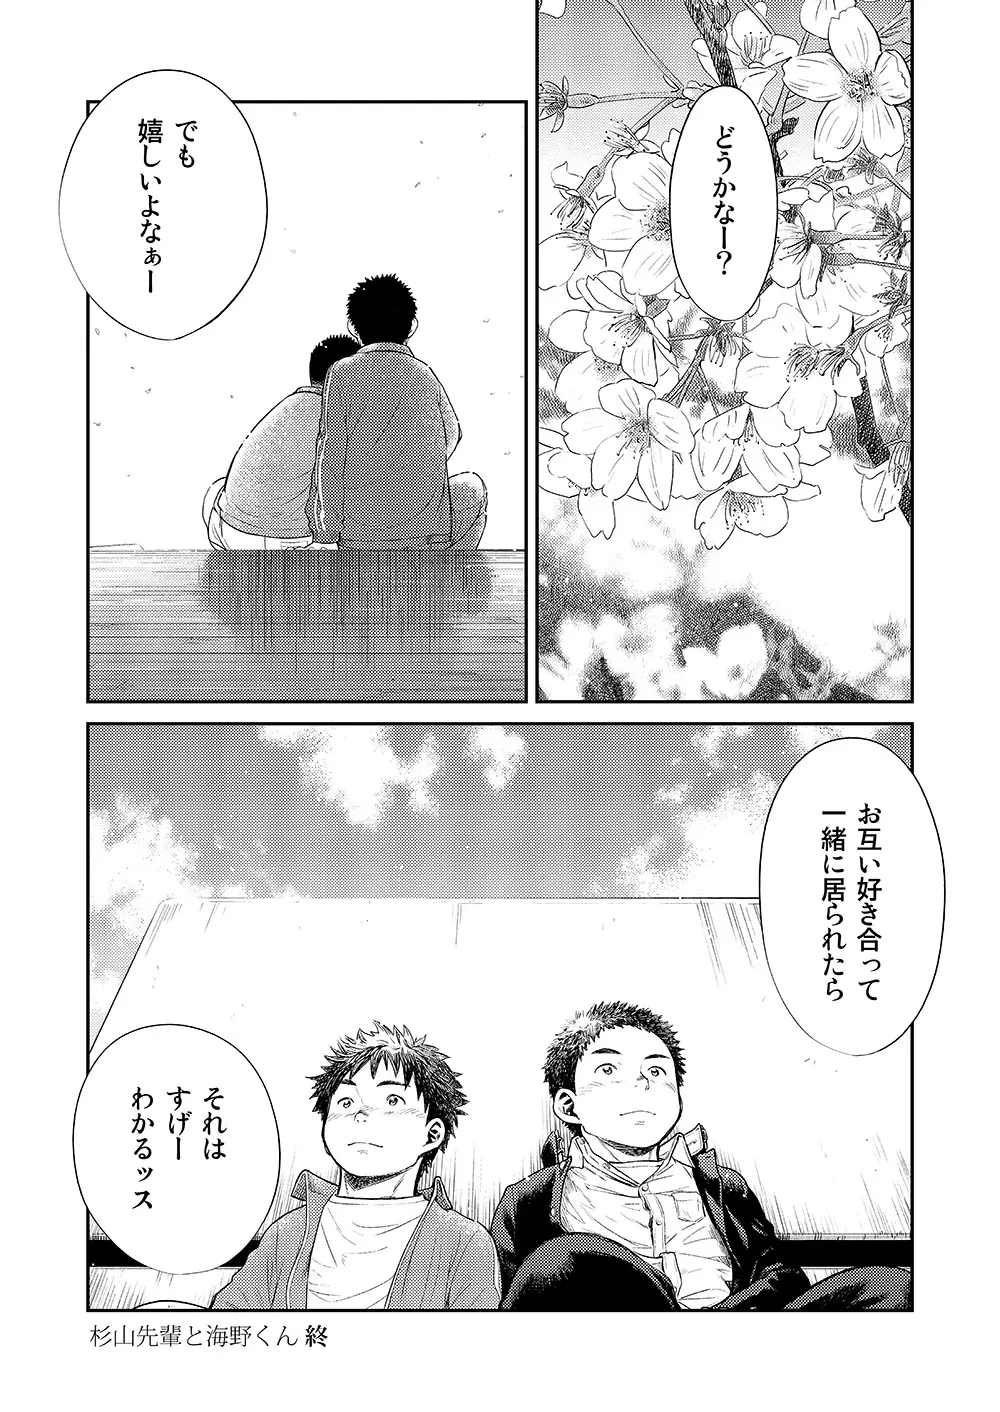 漫画少年ズーム VOL.11 & 12 20ページ